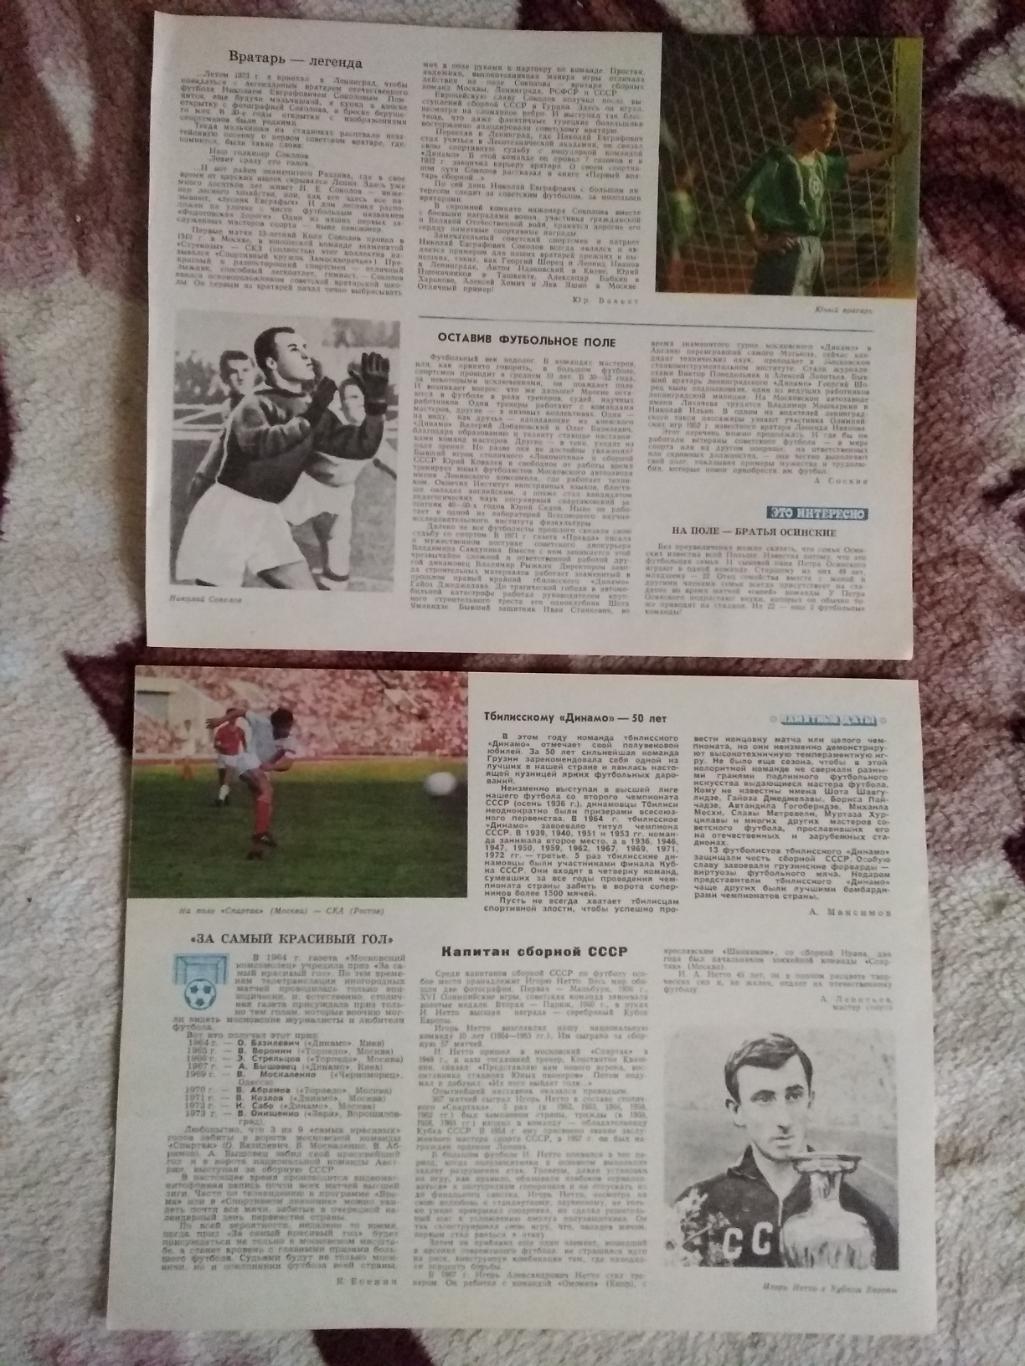 Статья.Футбол.Календарь Спорт 1975 г. (4).